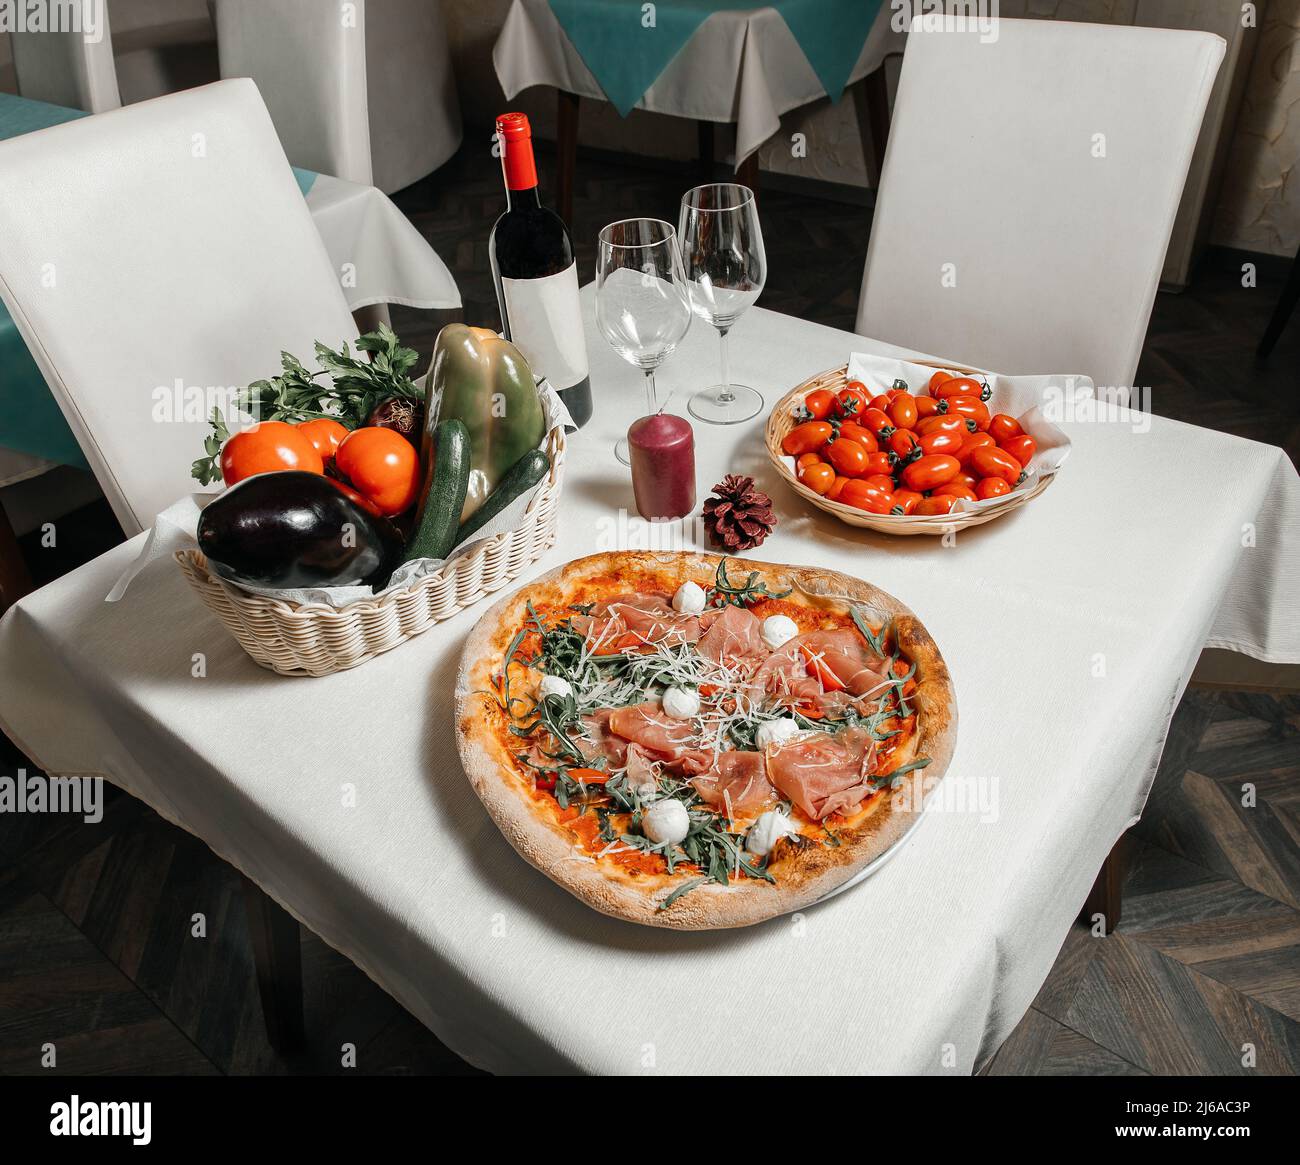 Table servie dans un restaurant pizzeria avec pizza, tomates et un panier de légumes frais, verres à vin et une bouteille de vin, photo de stock, restaurant Banque D'Images